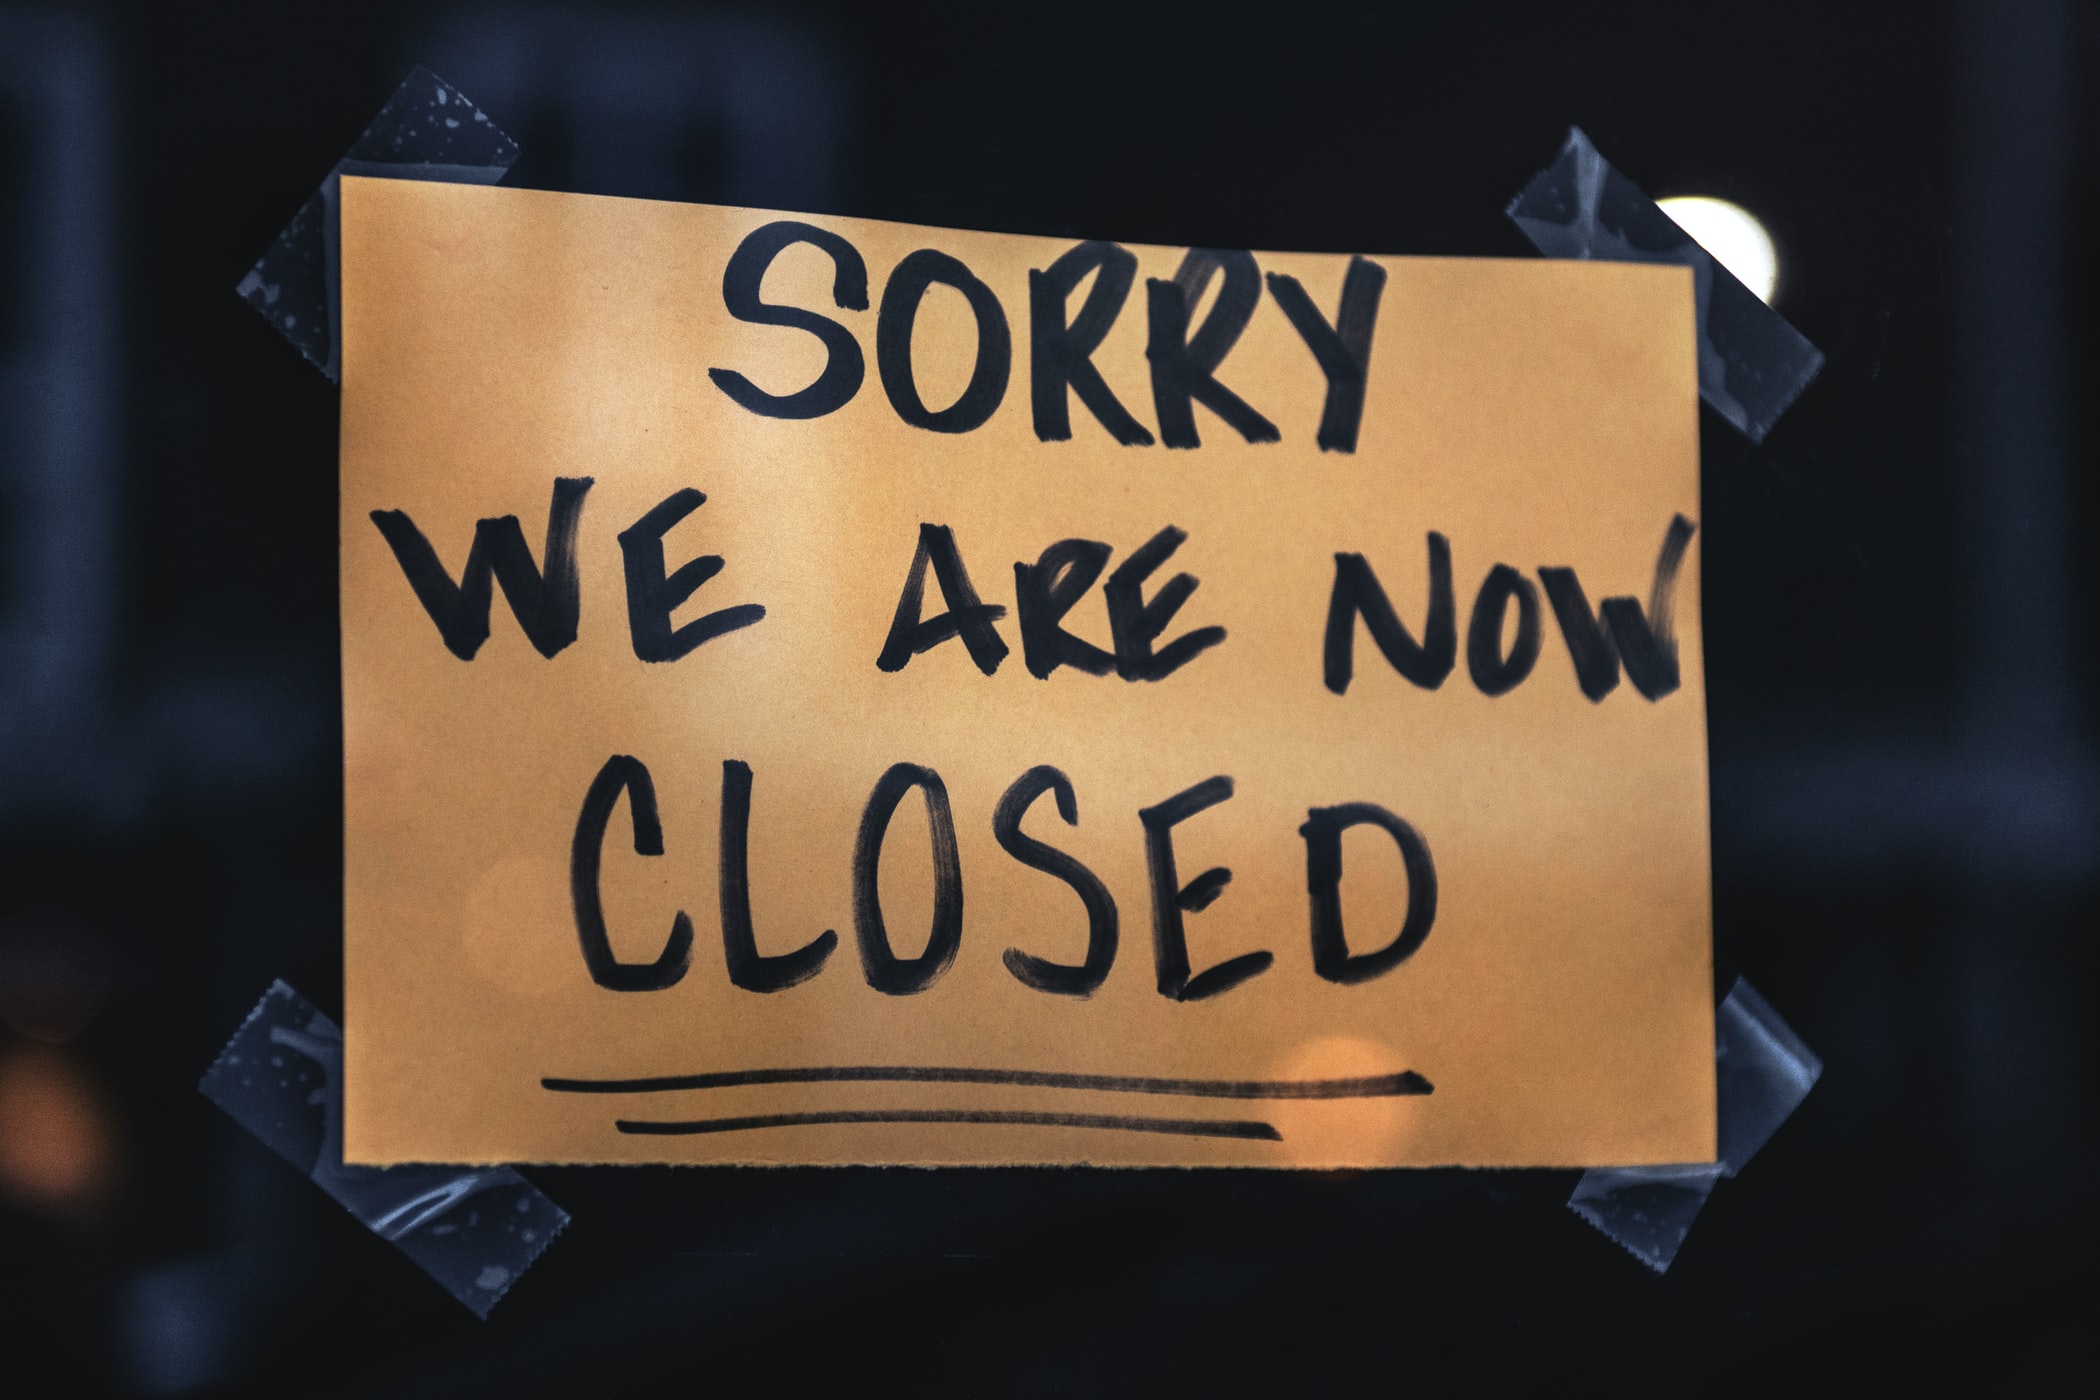 Ein Schild mit der Aufschrift: "Sorry, we are now closed" klebt an einer Scheibe.